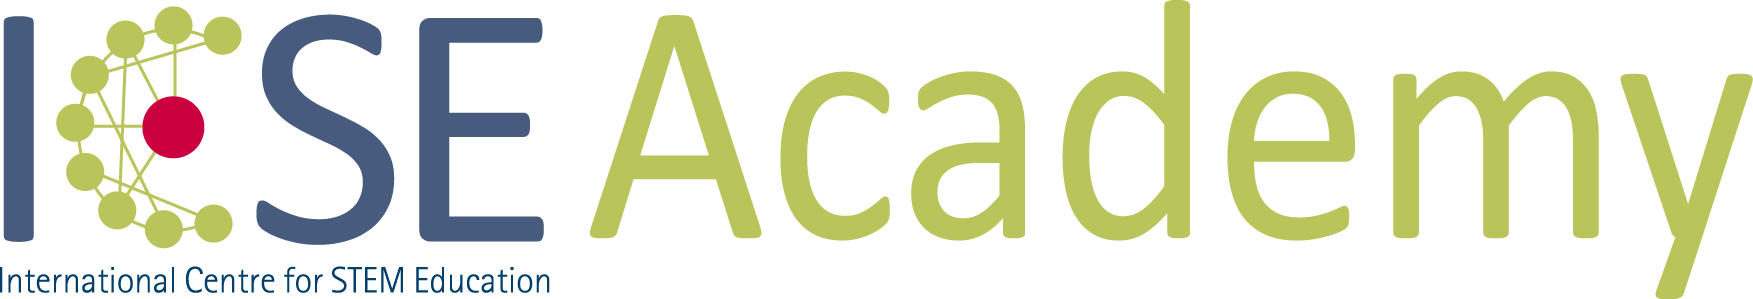 ICSEAcademy Logo